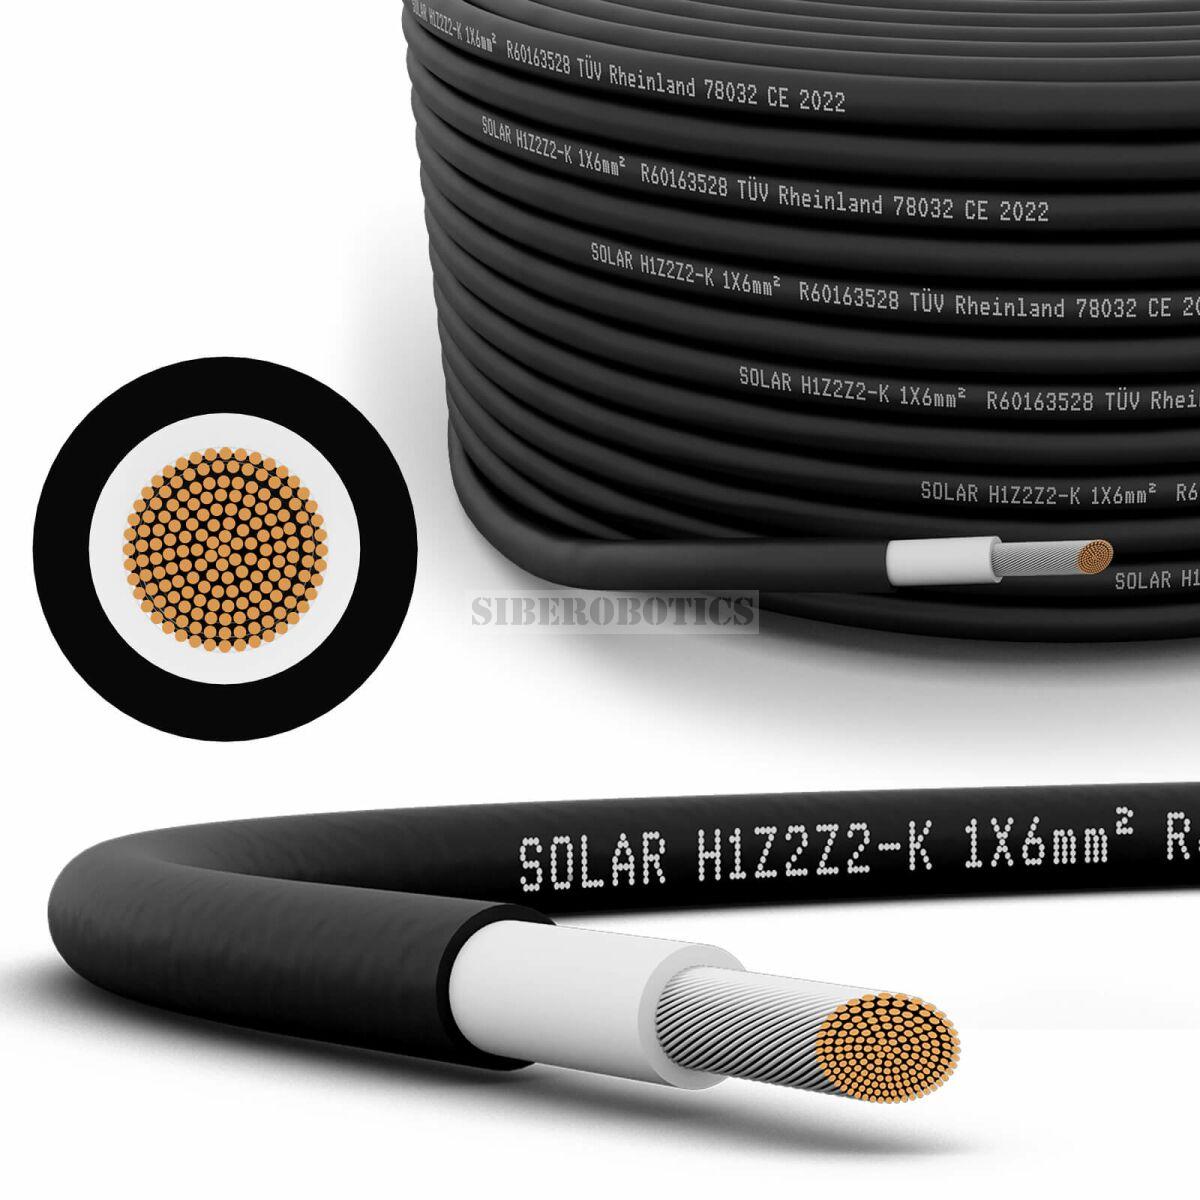 Solární kabel SolarPlus 1x6mm² (1 kV) cena za bm Černý